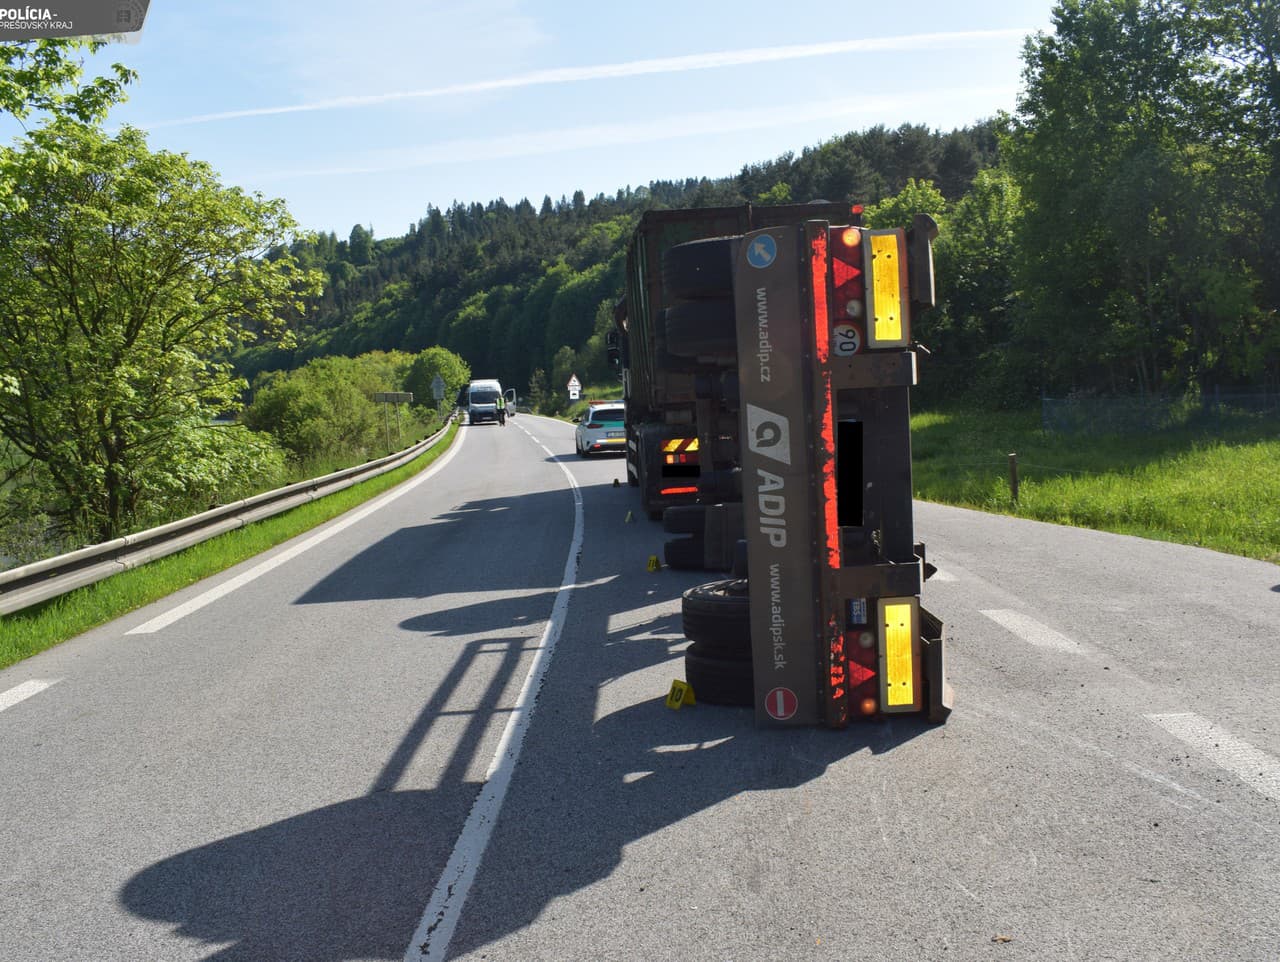 Polícia hľadá svedkov dopravnej nehody nákladného auta pri obci Lacková 